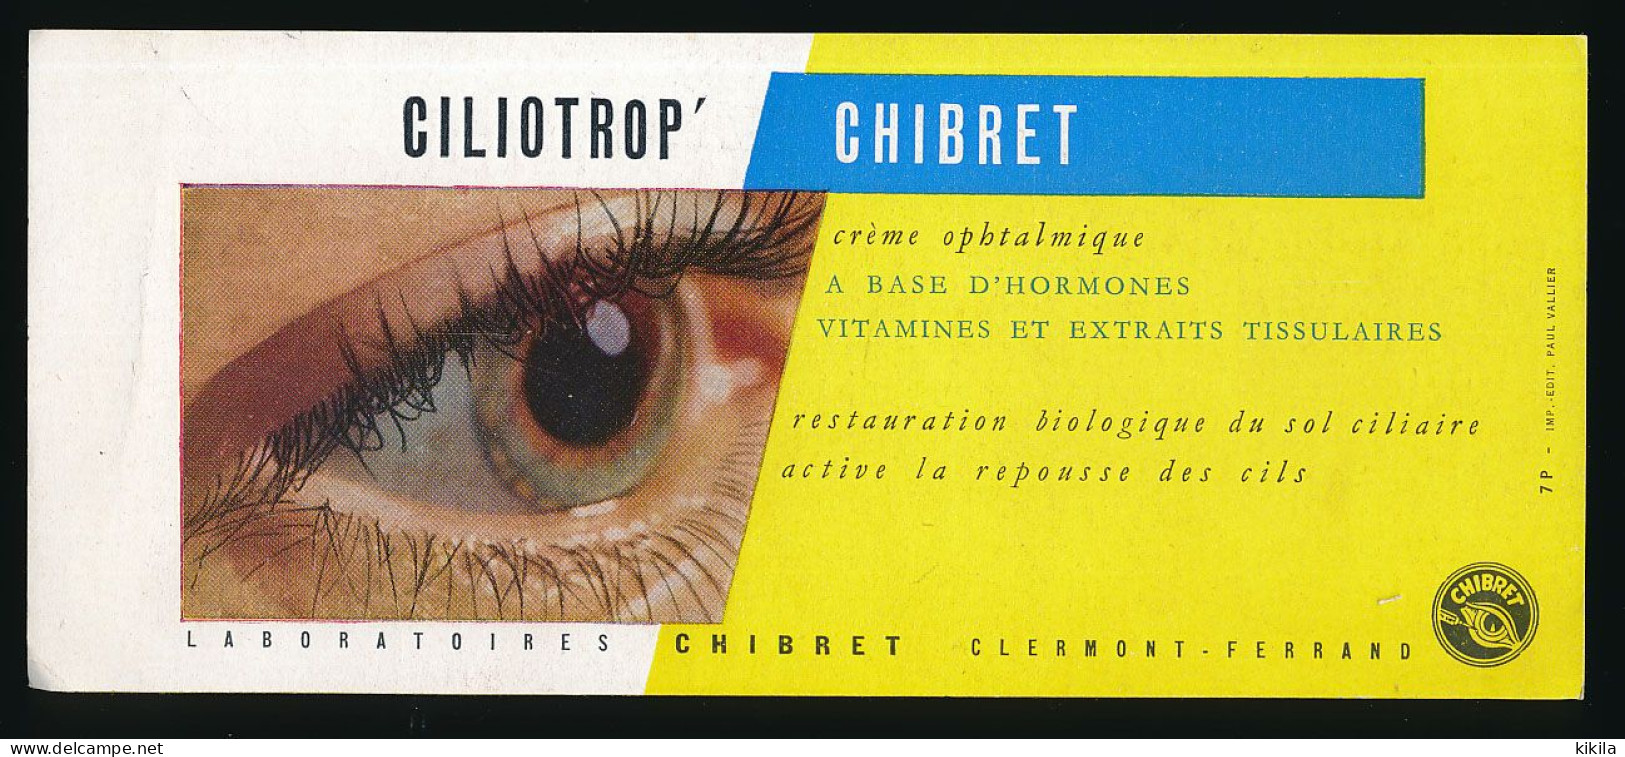 Buvard 21 X 9 Laboratoires CHIBRET Clermont-Ferrand 63  Crème Ophtalmique Ciliotrop   œil - Chemist's